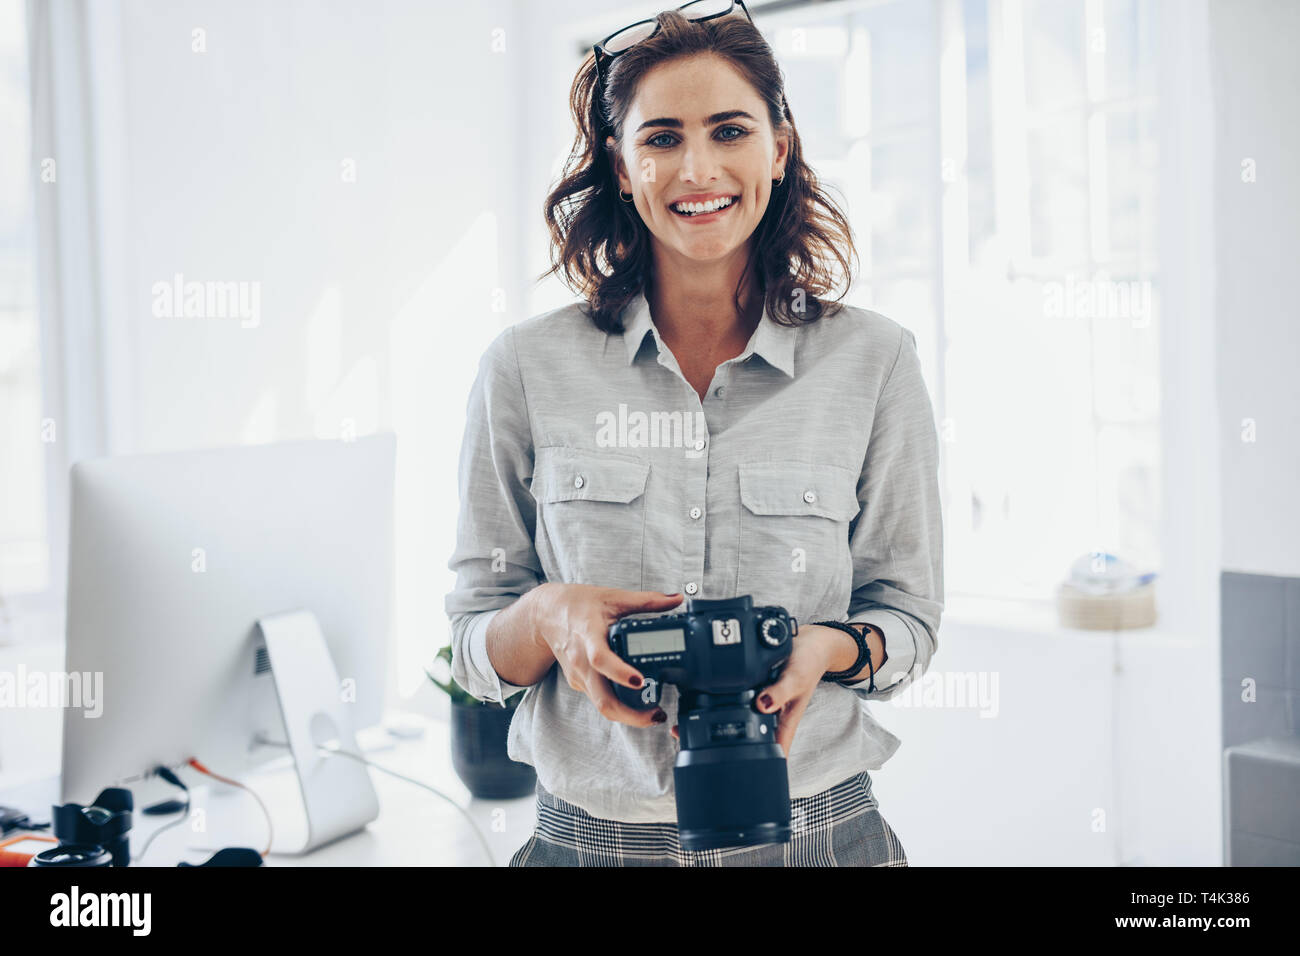 Attraktive junge Frau, die Fotografin mit Ihrer professionellen Kamera. Fotografin mit Digitalkamera im Amt. Stockfoto